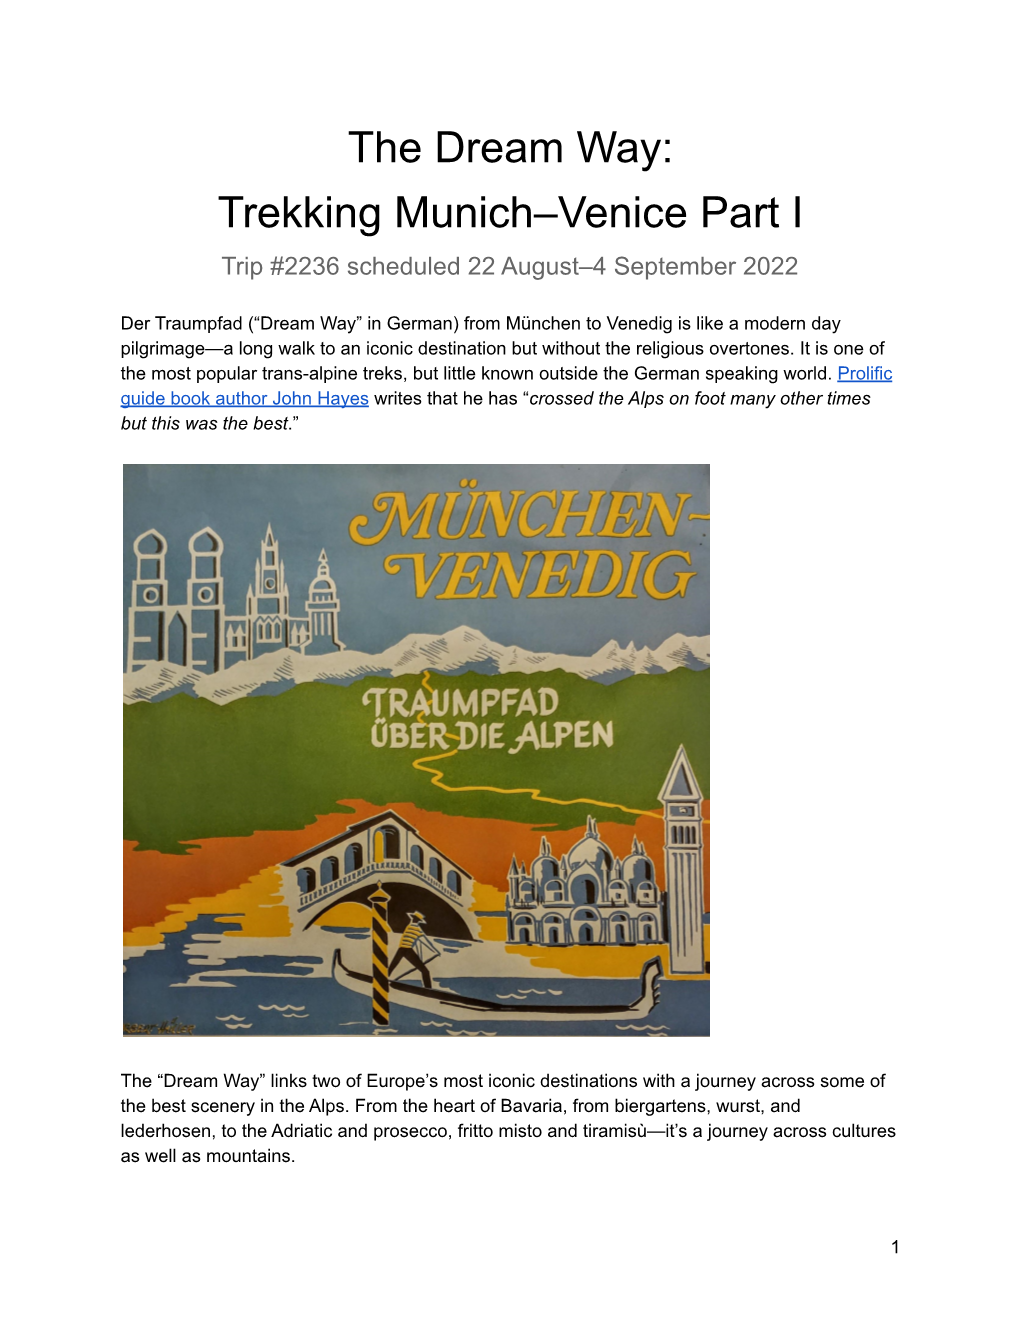 Trekking Munich–Venice Part I Trip #2236 Scheduled 22 August–4 September 2022